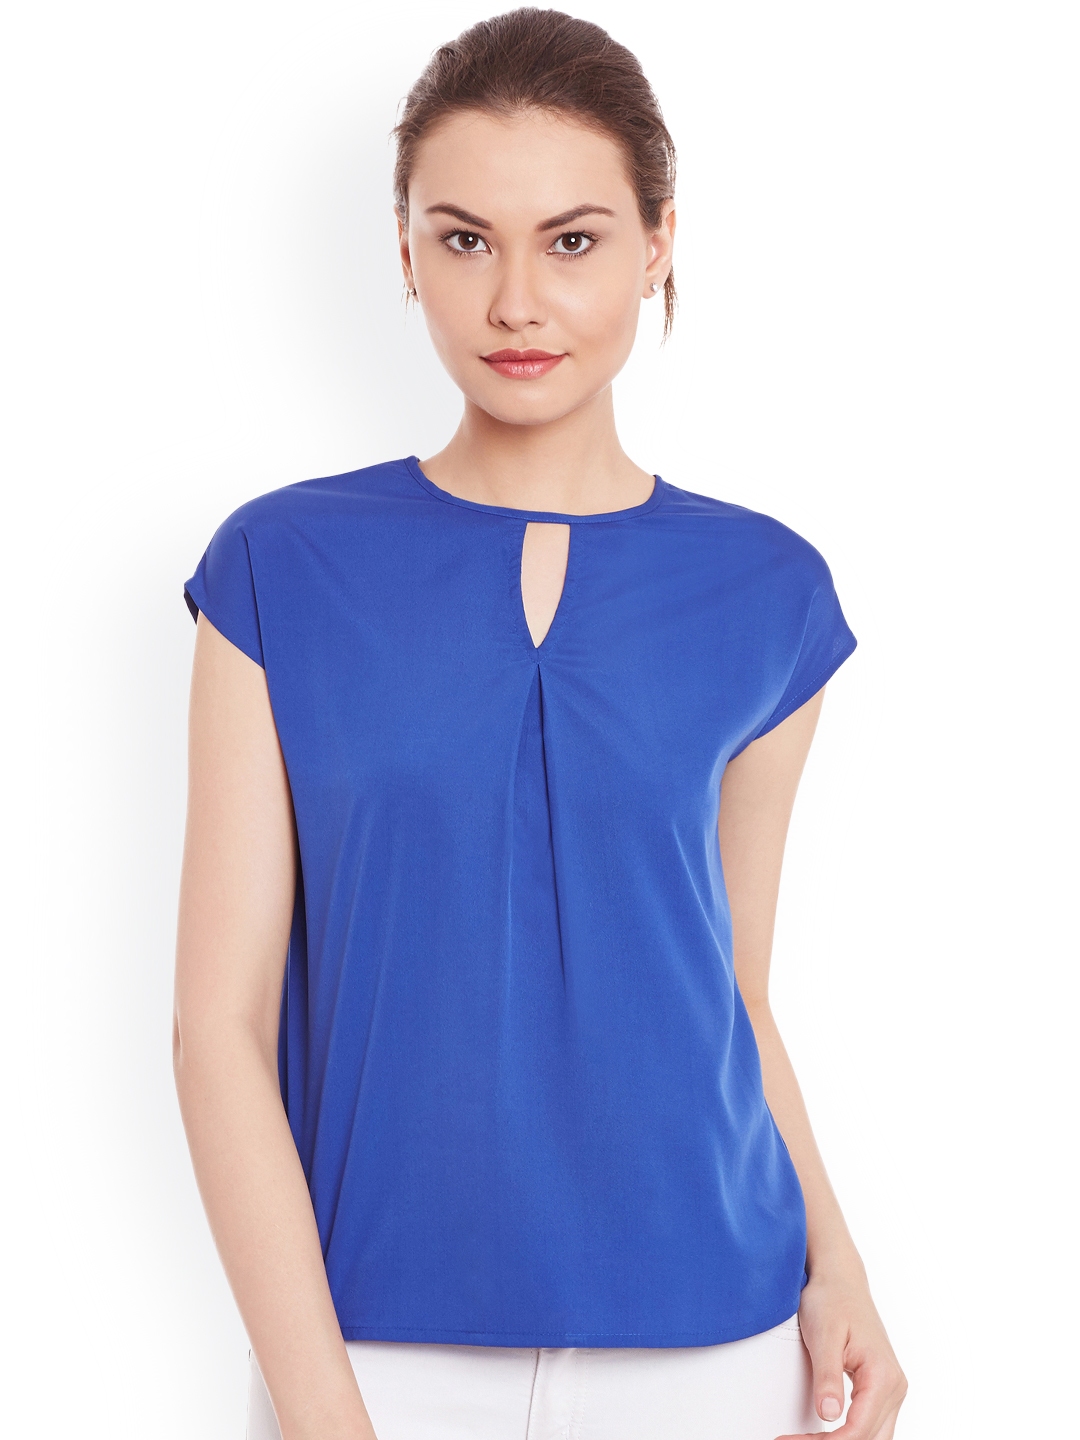 Buy WISSTLER Blue Top - Tops for Women 1747056 | Myntra